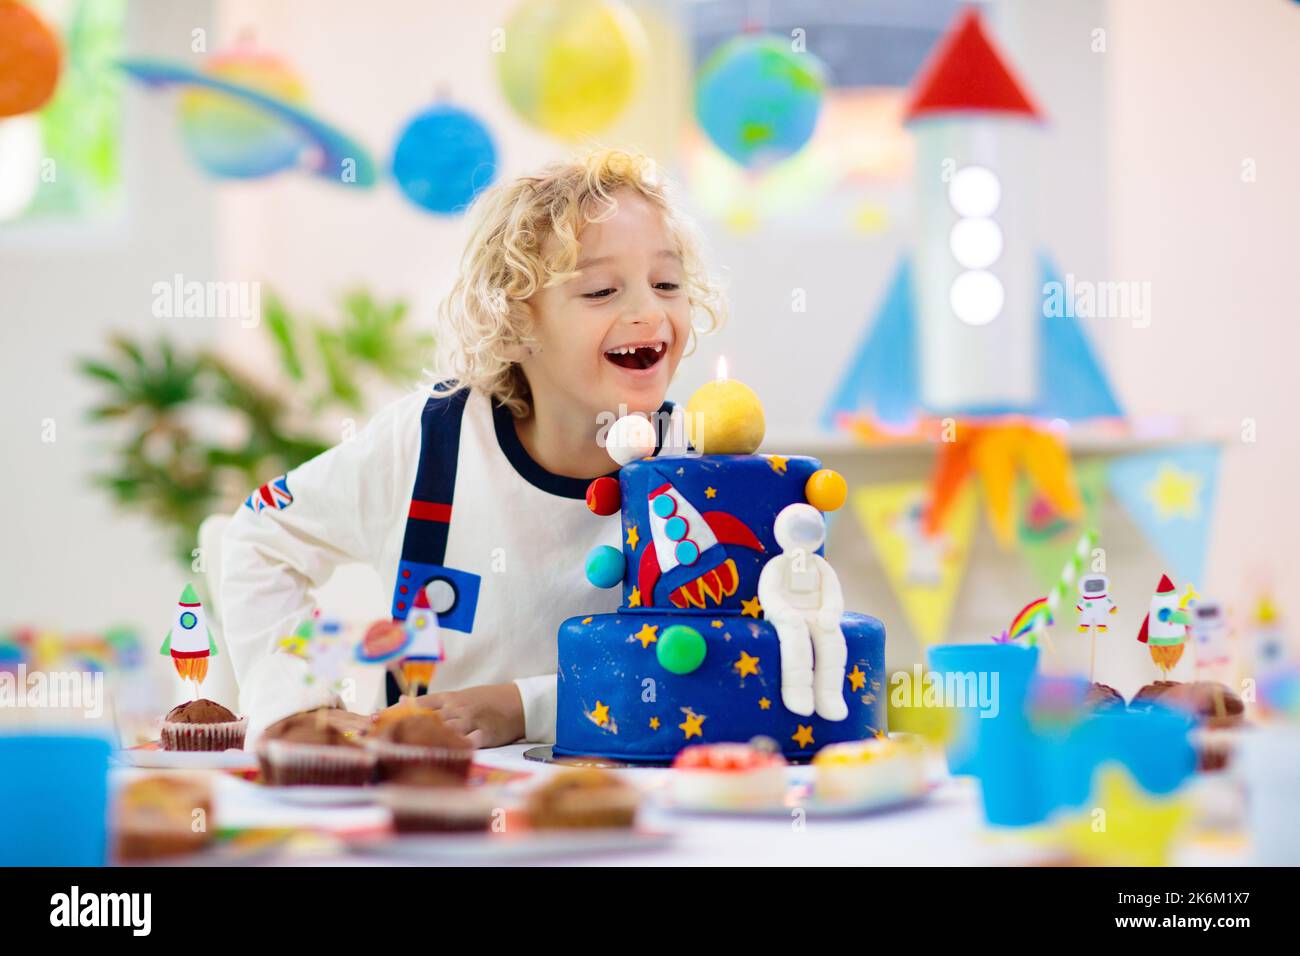 Kinder Raum Thema Geburtstagsfeier mit Kuchen und Cupcakes. Rakete, Sonnensystem Planet und Raumschiff Dekoration für Kinder-Event. Stockfoto